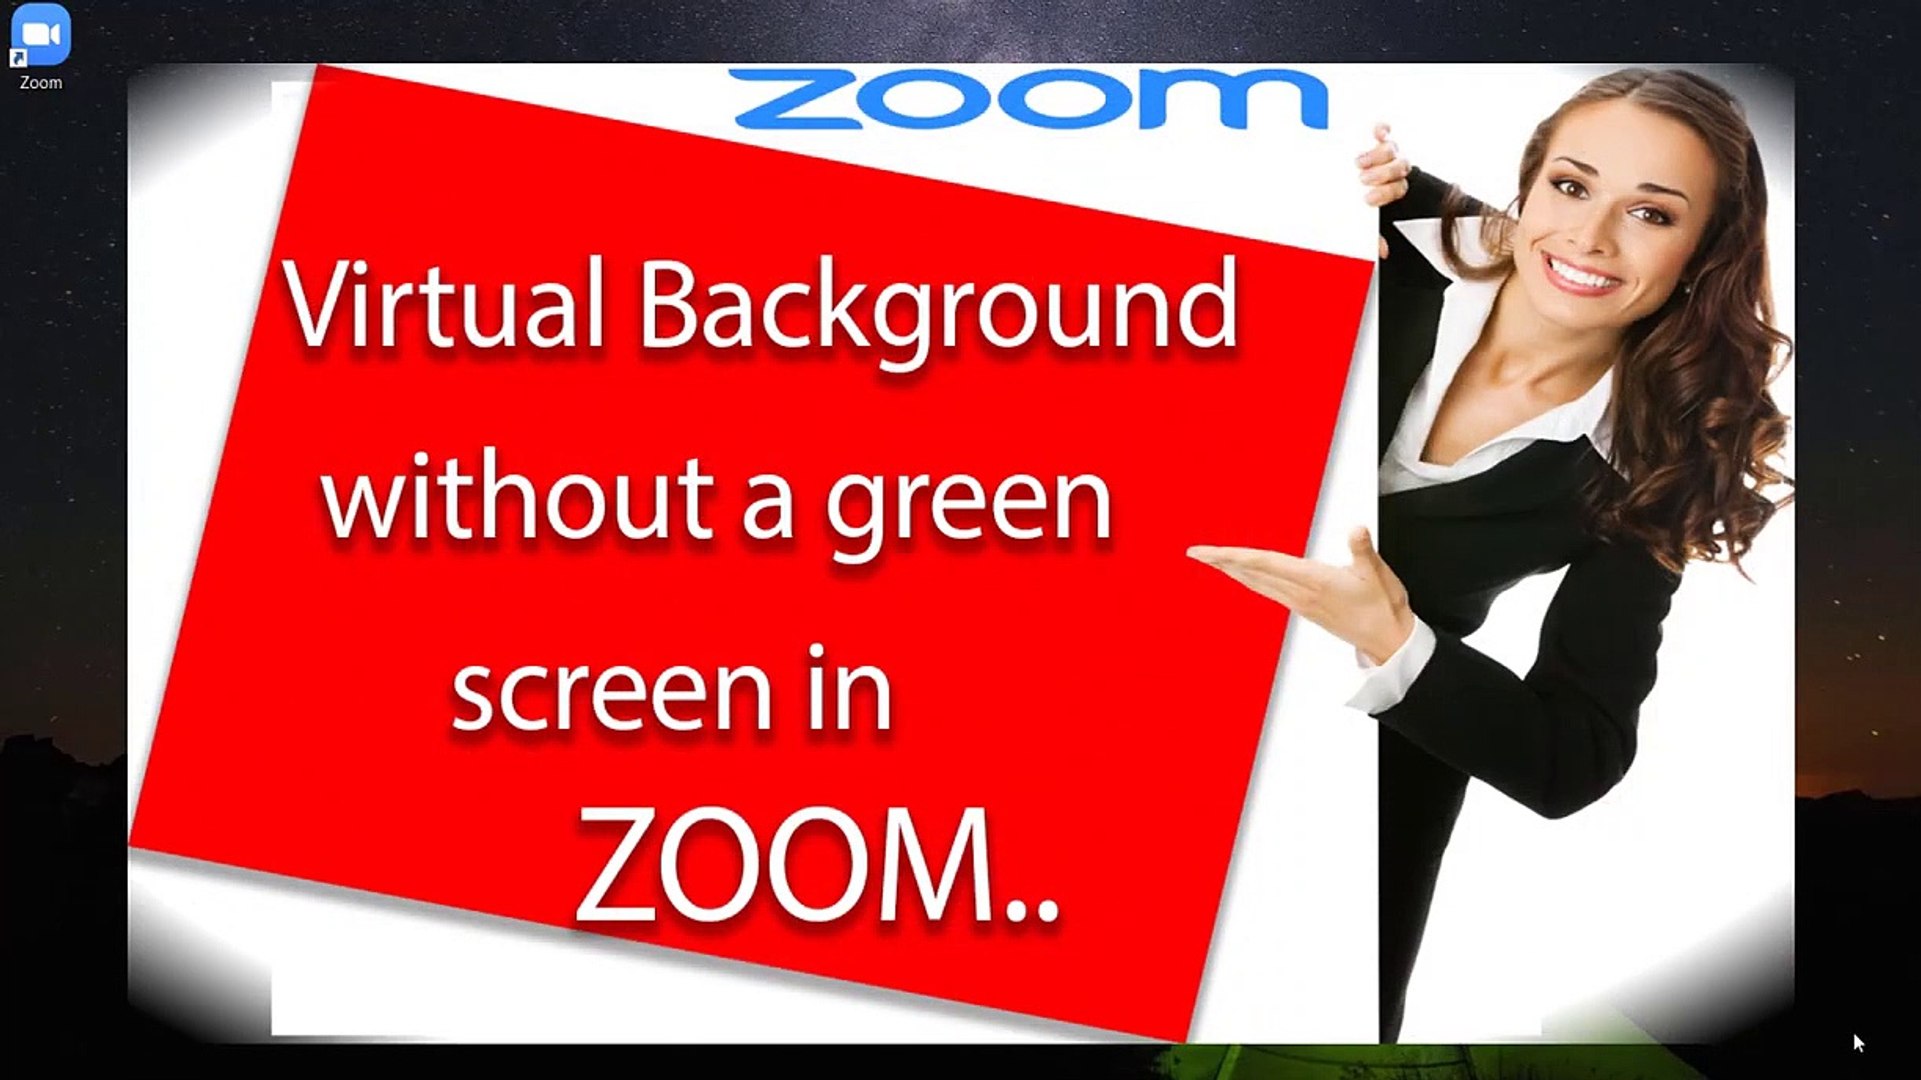 Tận dụng tính năng phông nền ảo trên Zoom để tạo ra sự chuyên nghiệp, cá tính và hiệu quả khi làm việc trực tuyến. Với số lượng khổng lồ phông nền ảo đa dạng, bạn có thể chọn cho mình một phông nền độc đáo và phù hợp với ý tưởng của cuộc họp.